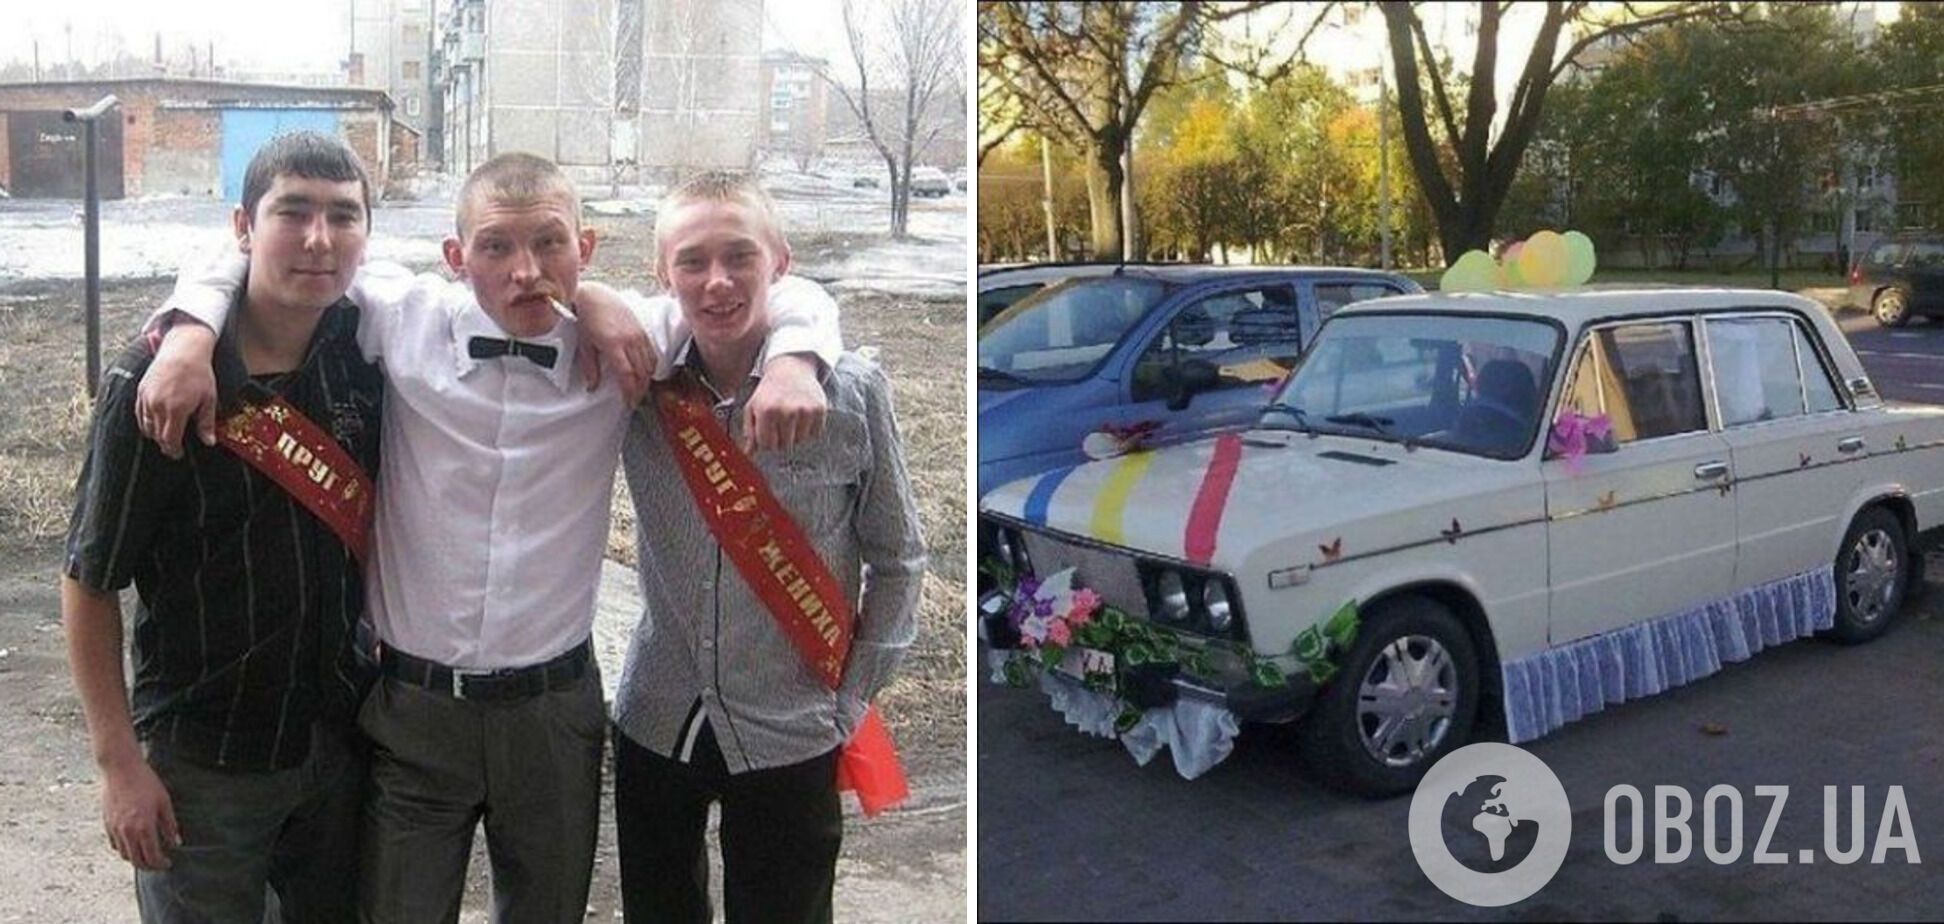 Коли друг одружується, хлопці готують усе найкраще: костюм і ексклюзивний автомобіль